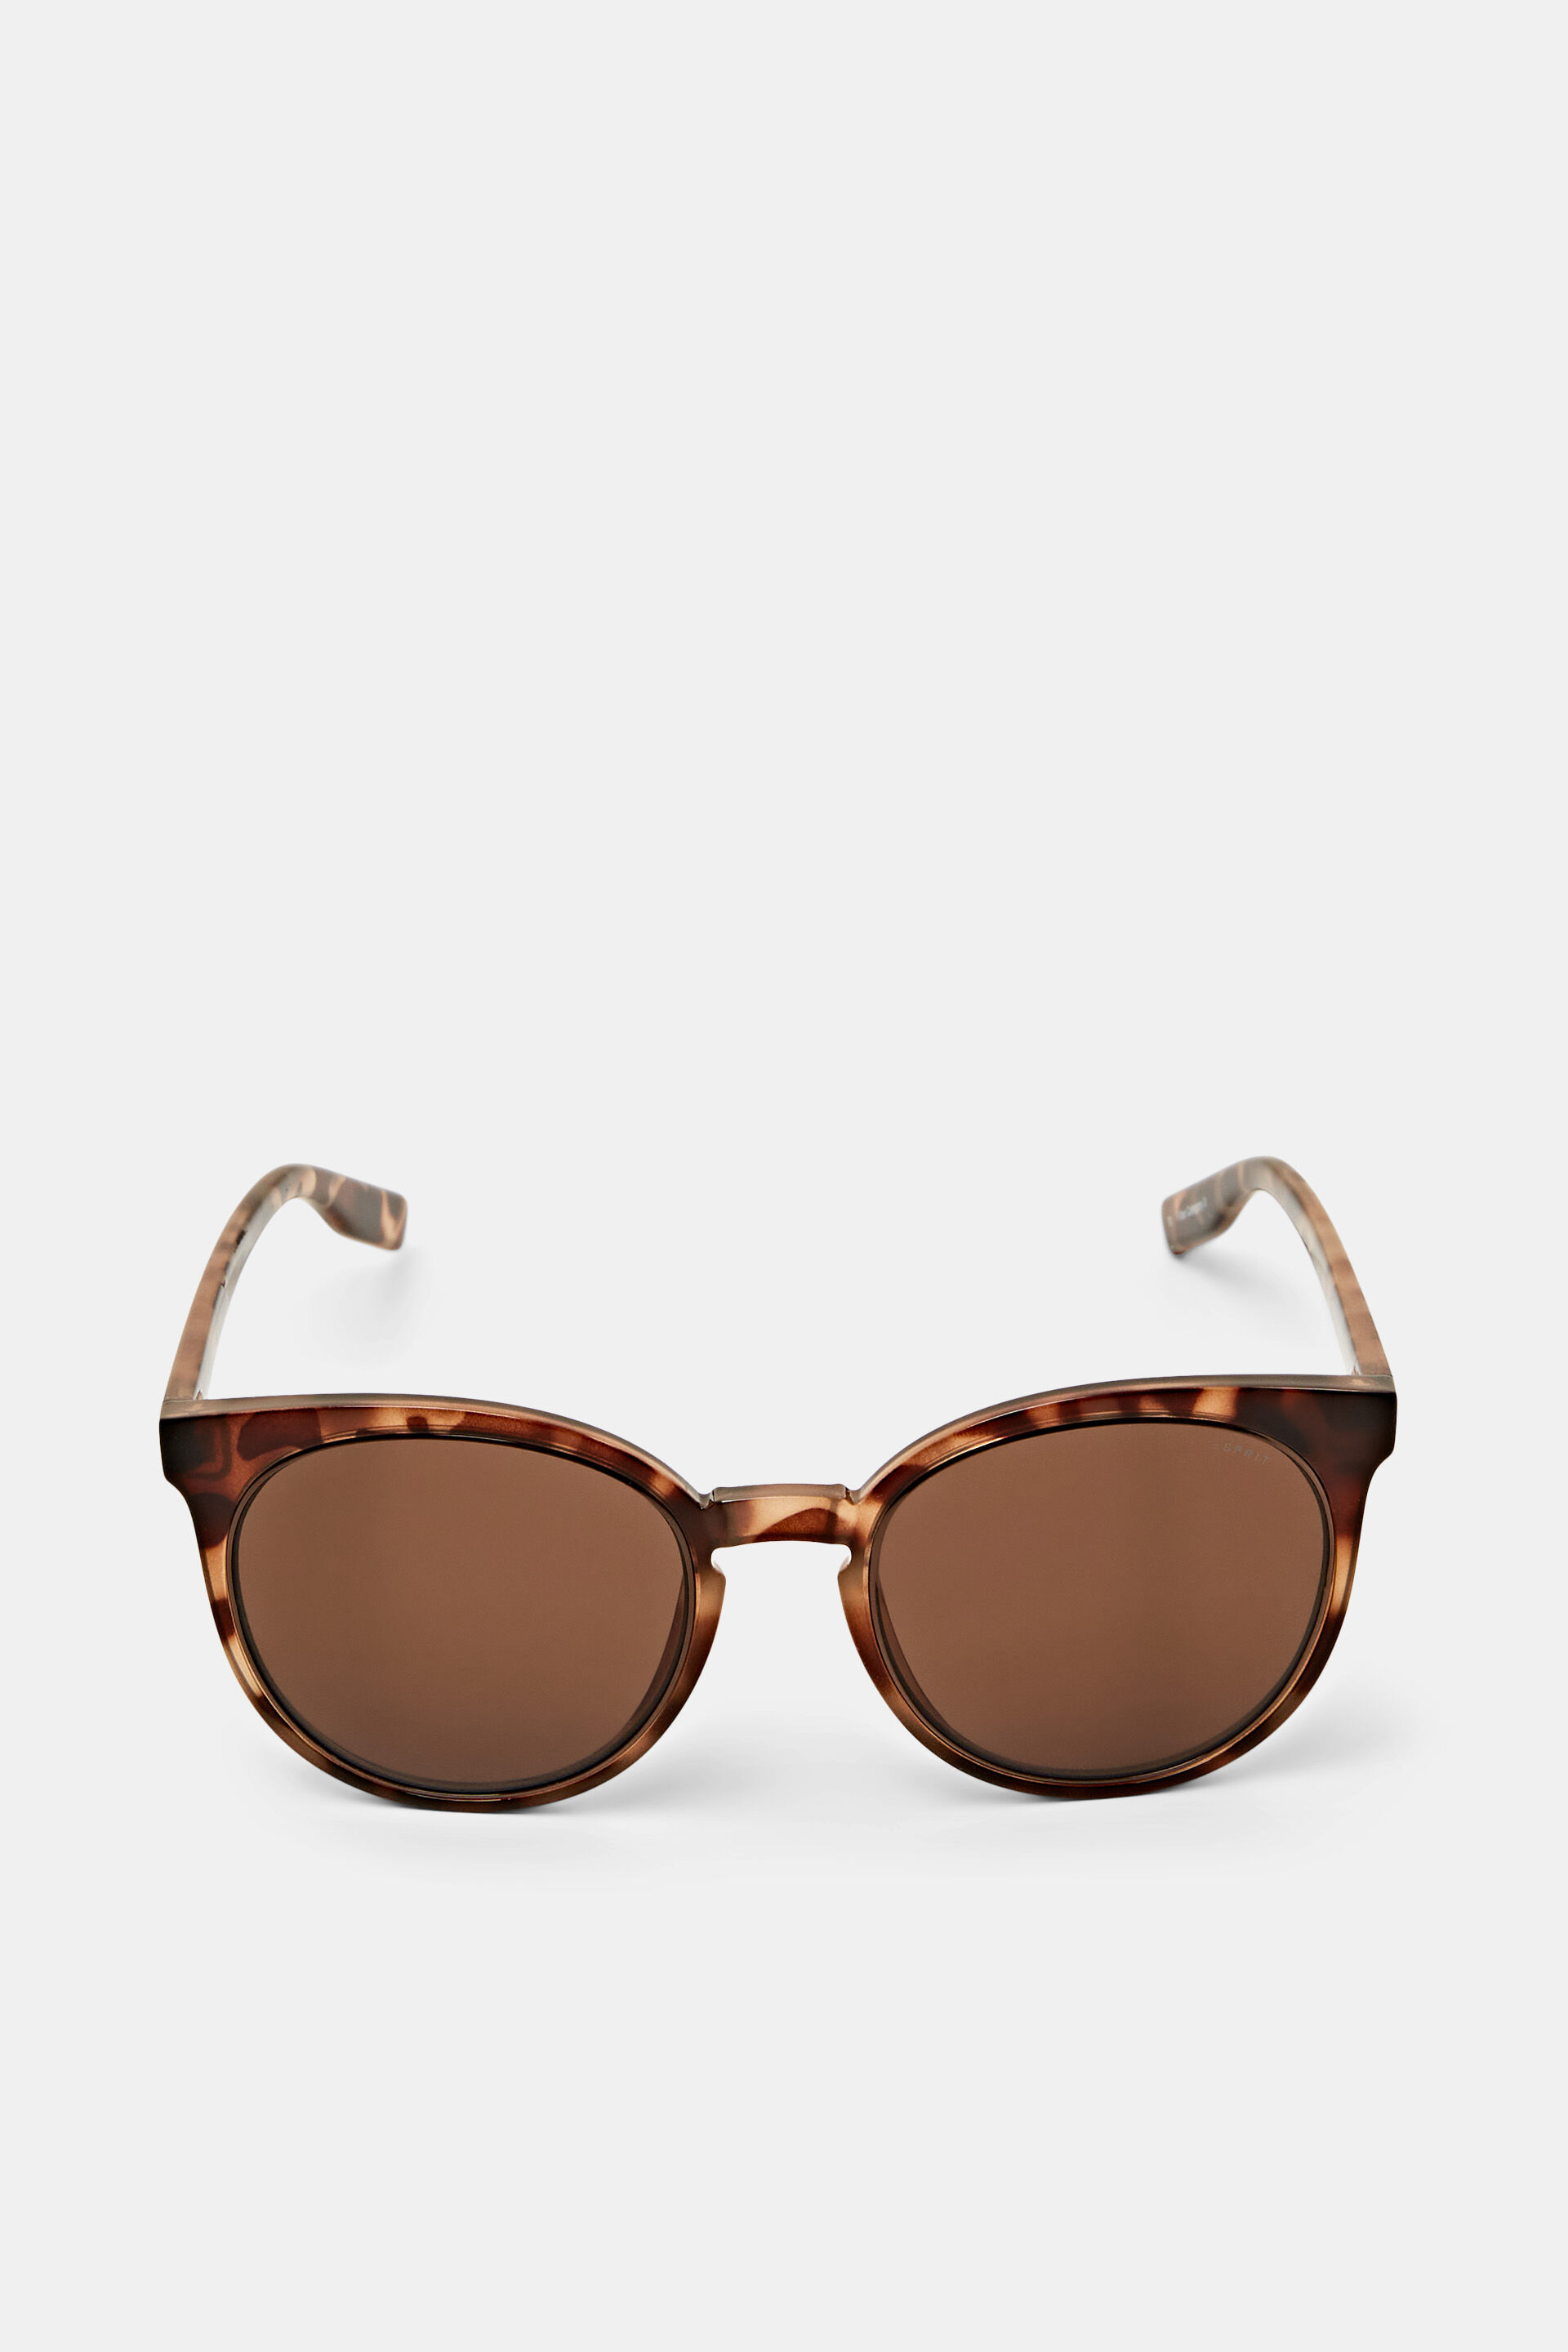 Esprit Online Store Round framed statement sunglasses